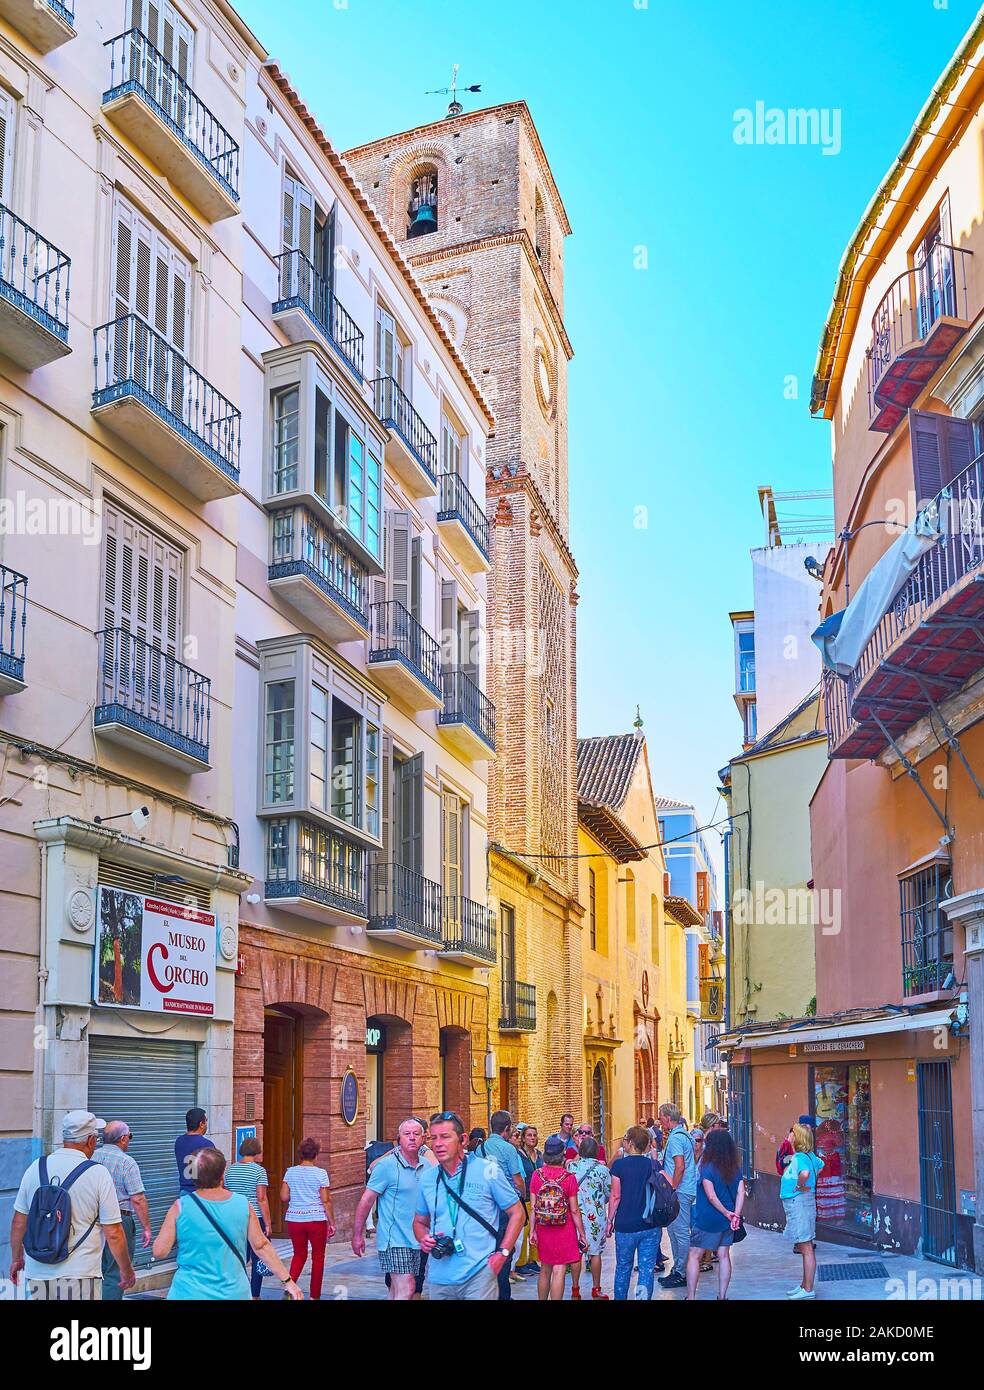 MALAGA, Spagna - 26 settembre 2019: affollato Calle Granada (street) con vecchi edifici alti e la torre campanaria a pianta quadrata di Santiago Apostol chiesa, sul set Foto Stock